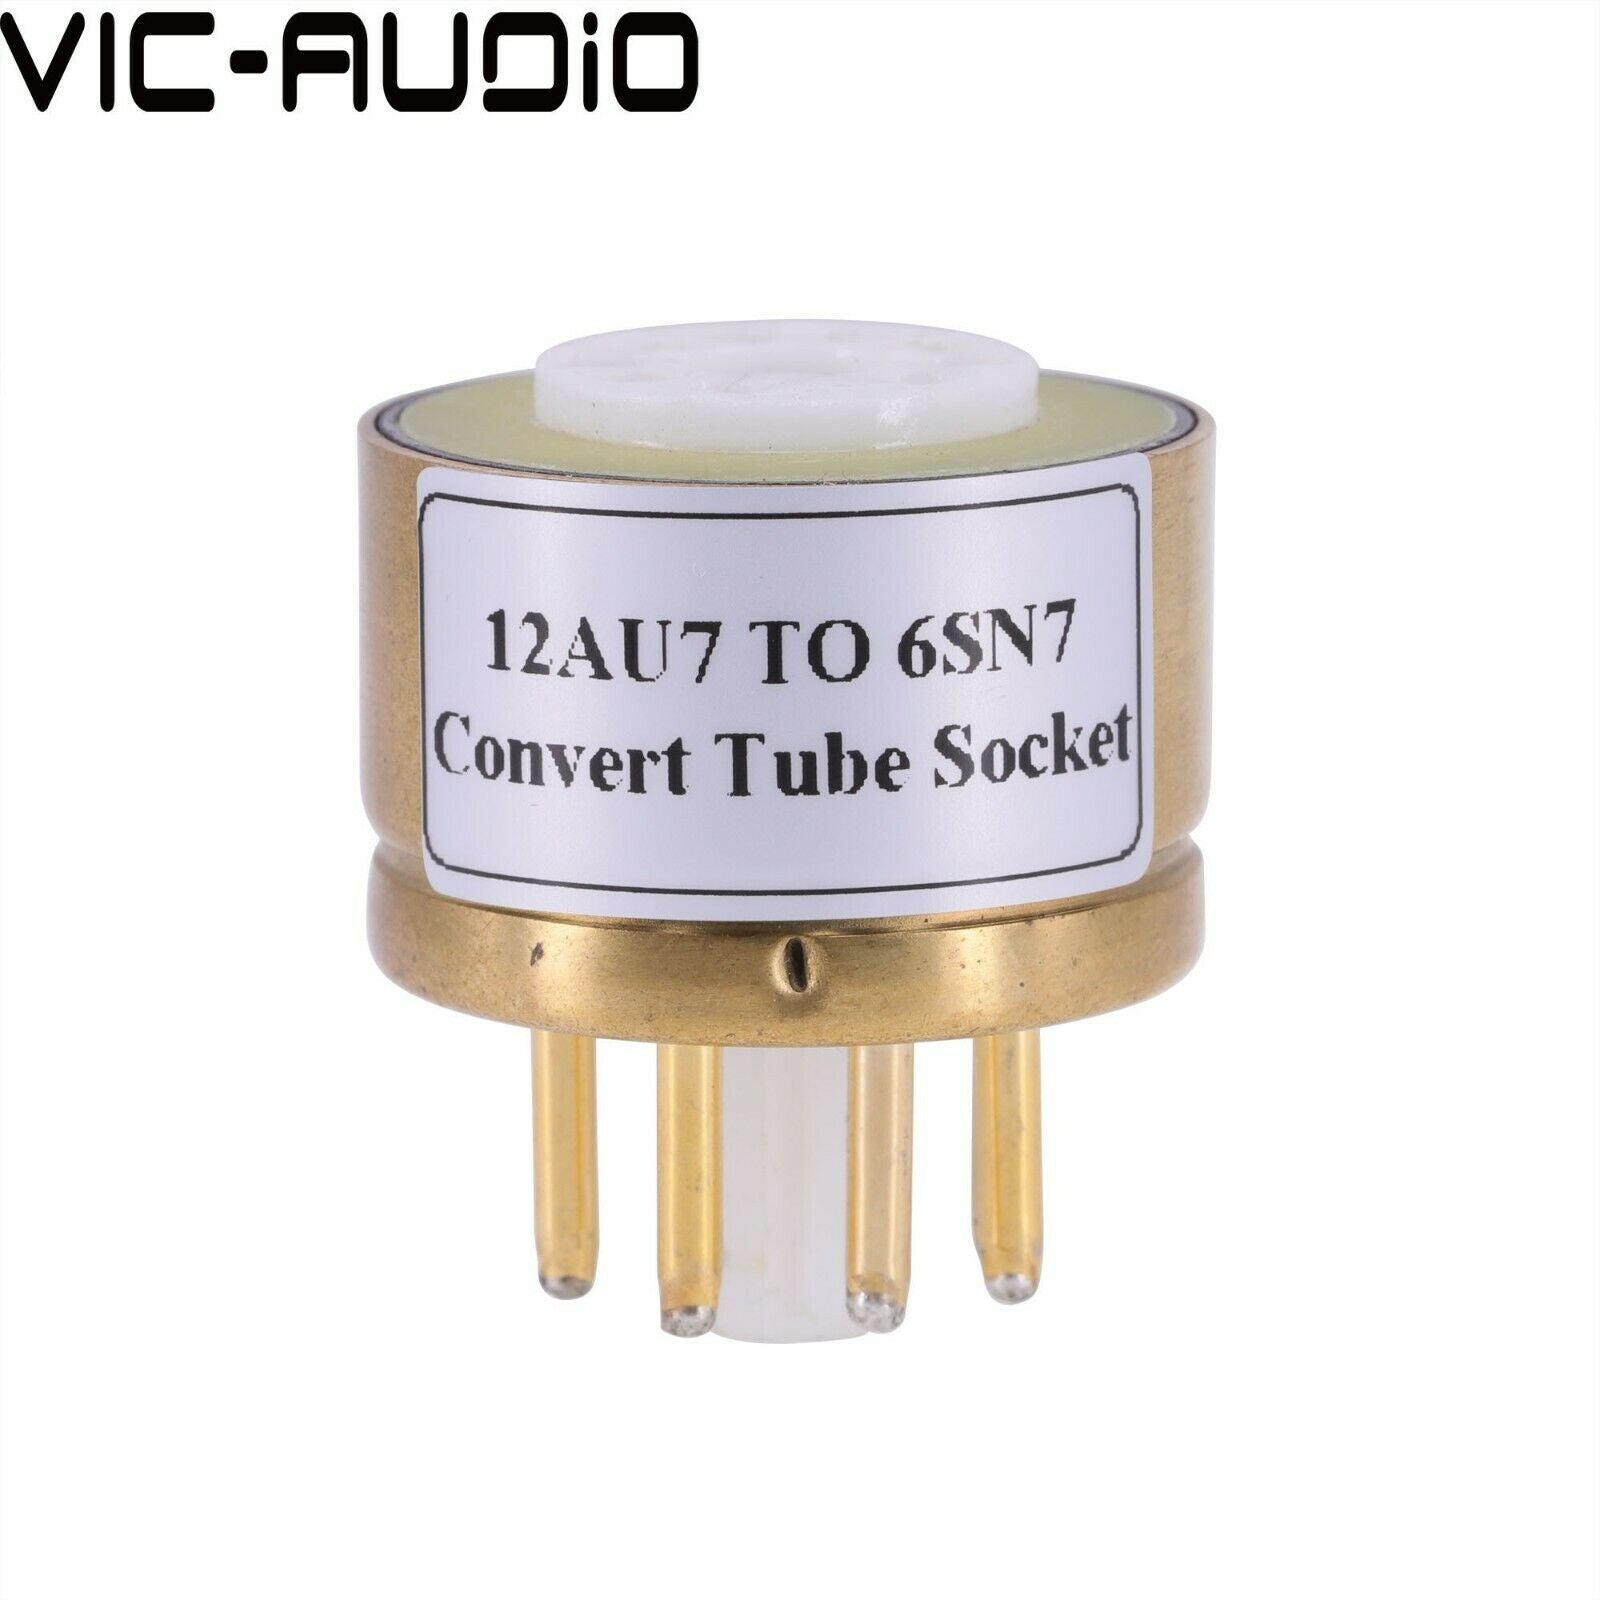 1PC Convert Socket 12AU7 12AX7 12AT7 ECC83 TO 6SN7 Vacuum Tube Socket Adapter